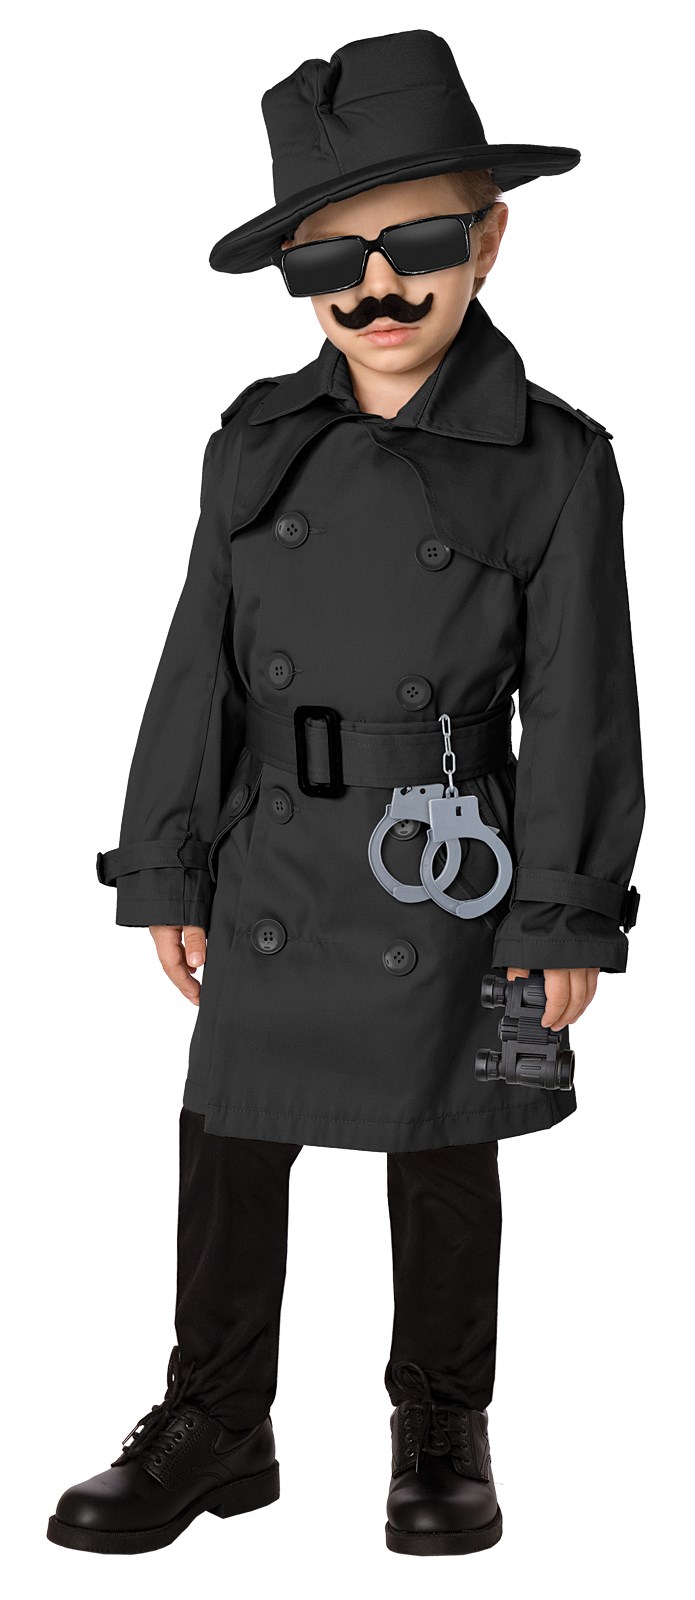 Spy Child Costume Kit